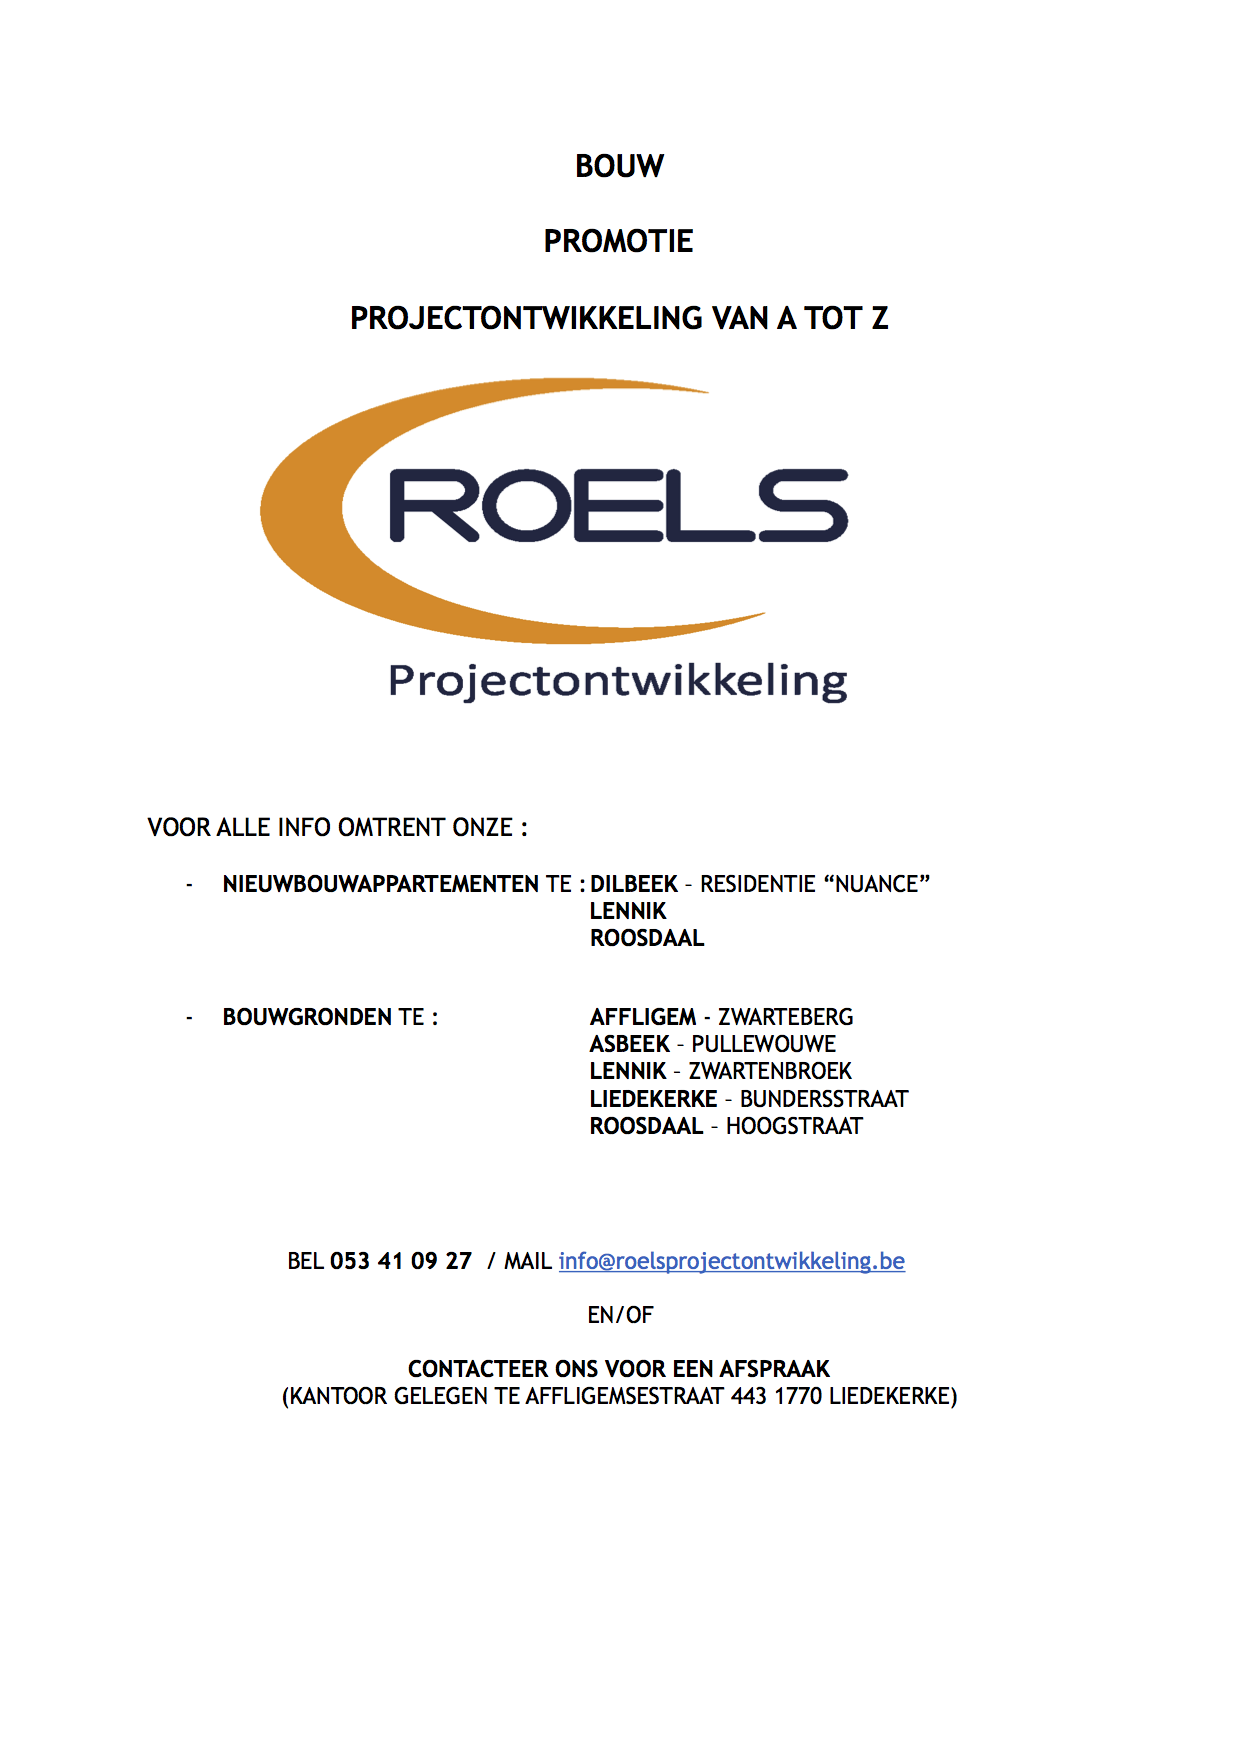 De website verschijnt binnenkort. Voor meer informatie: info@roelsprojectontwikkeling.be